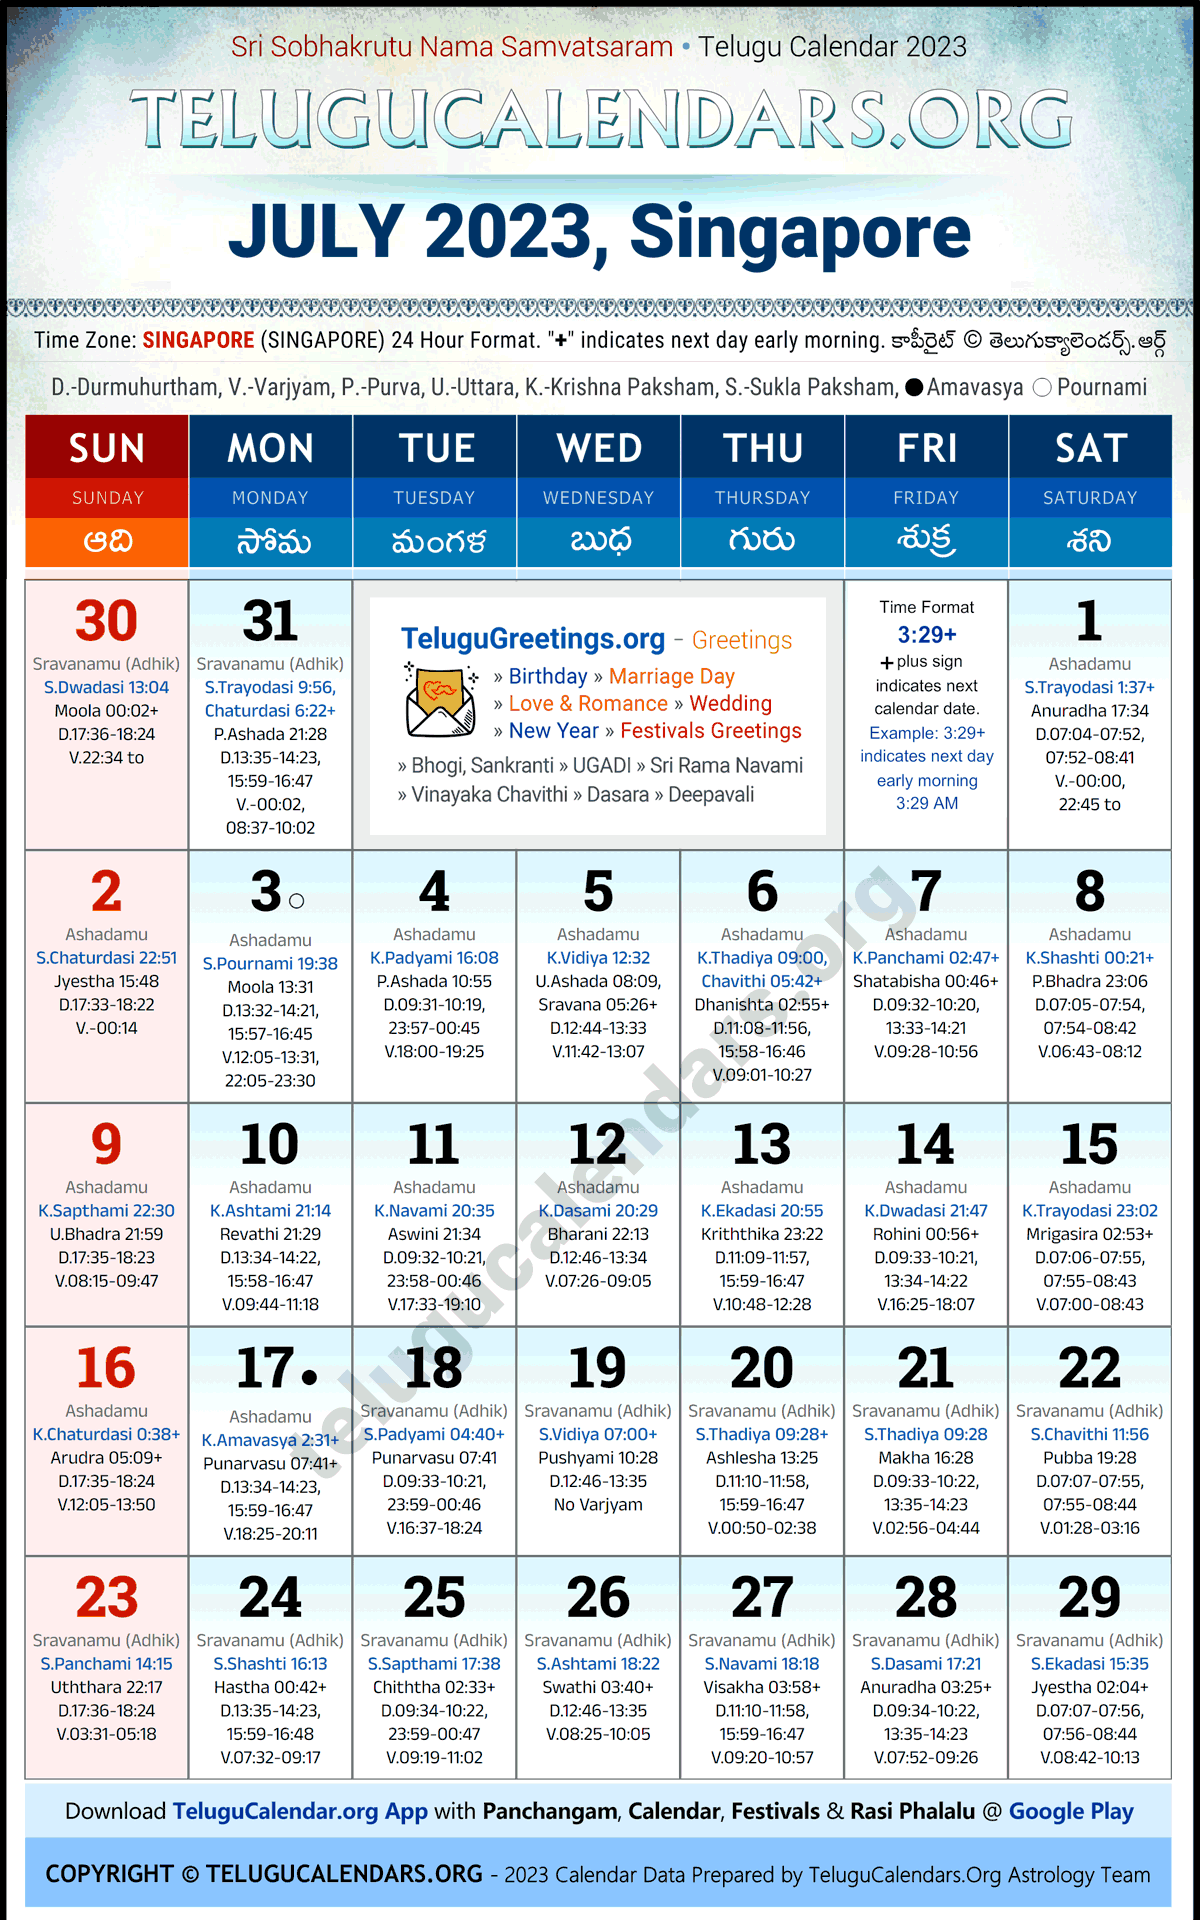 Telugu Calendar 2023 July Festivals for Singapore